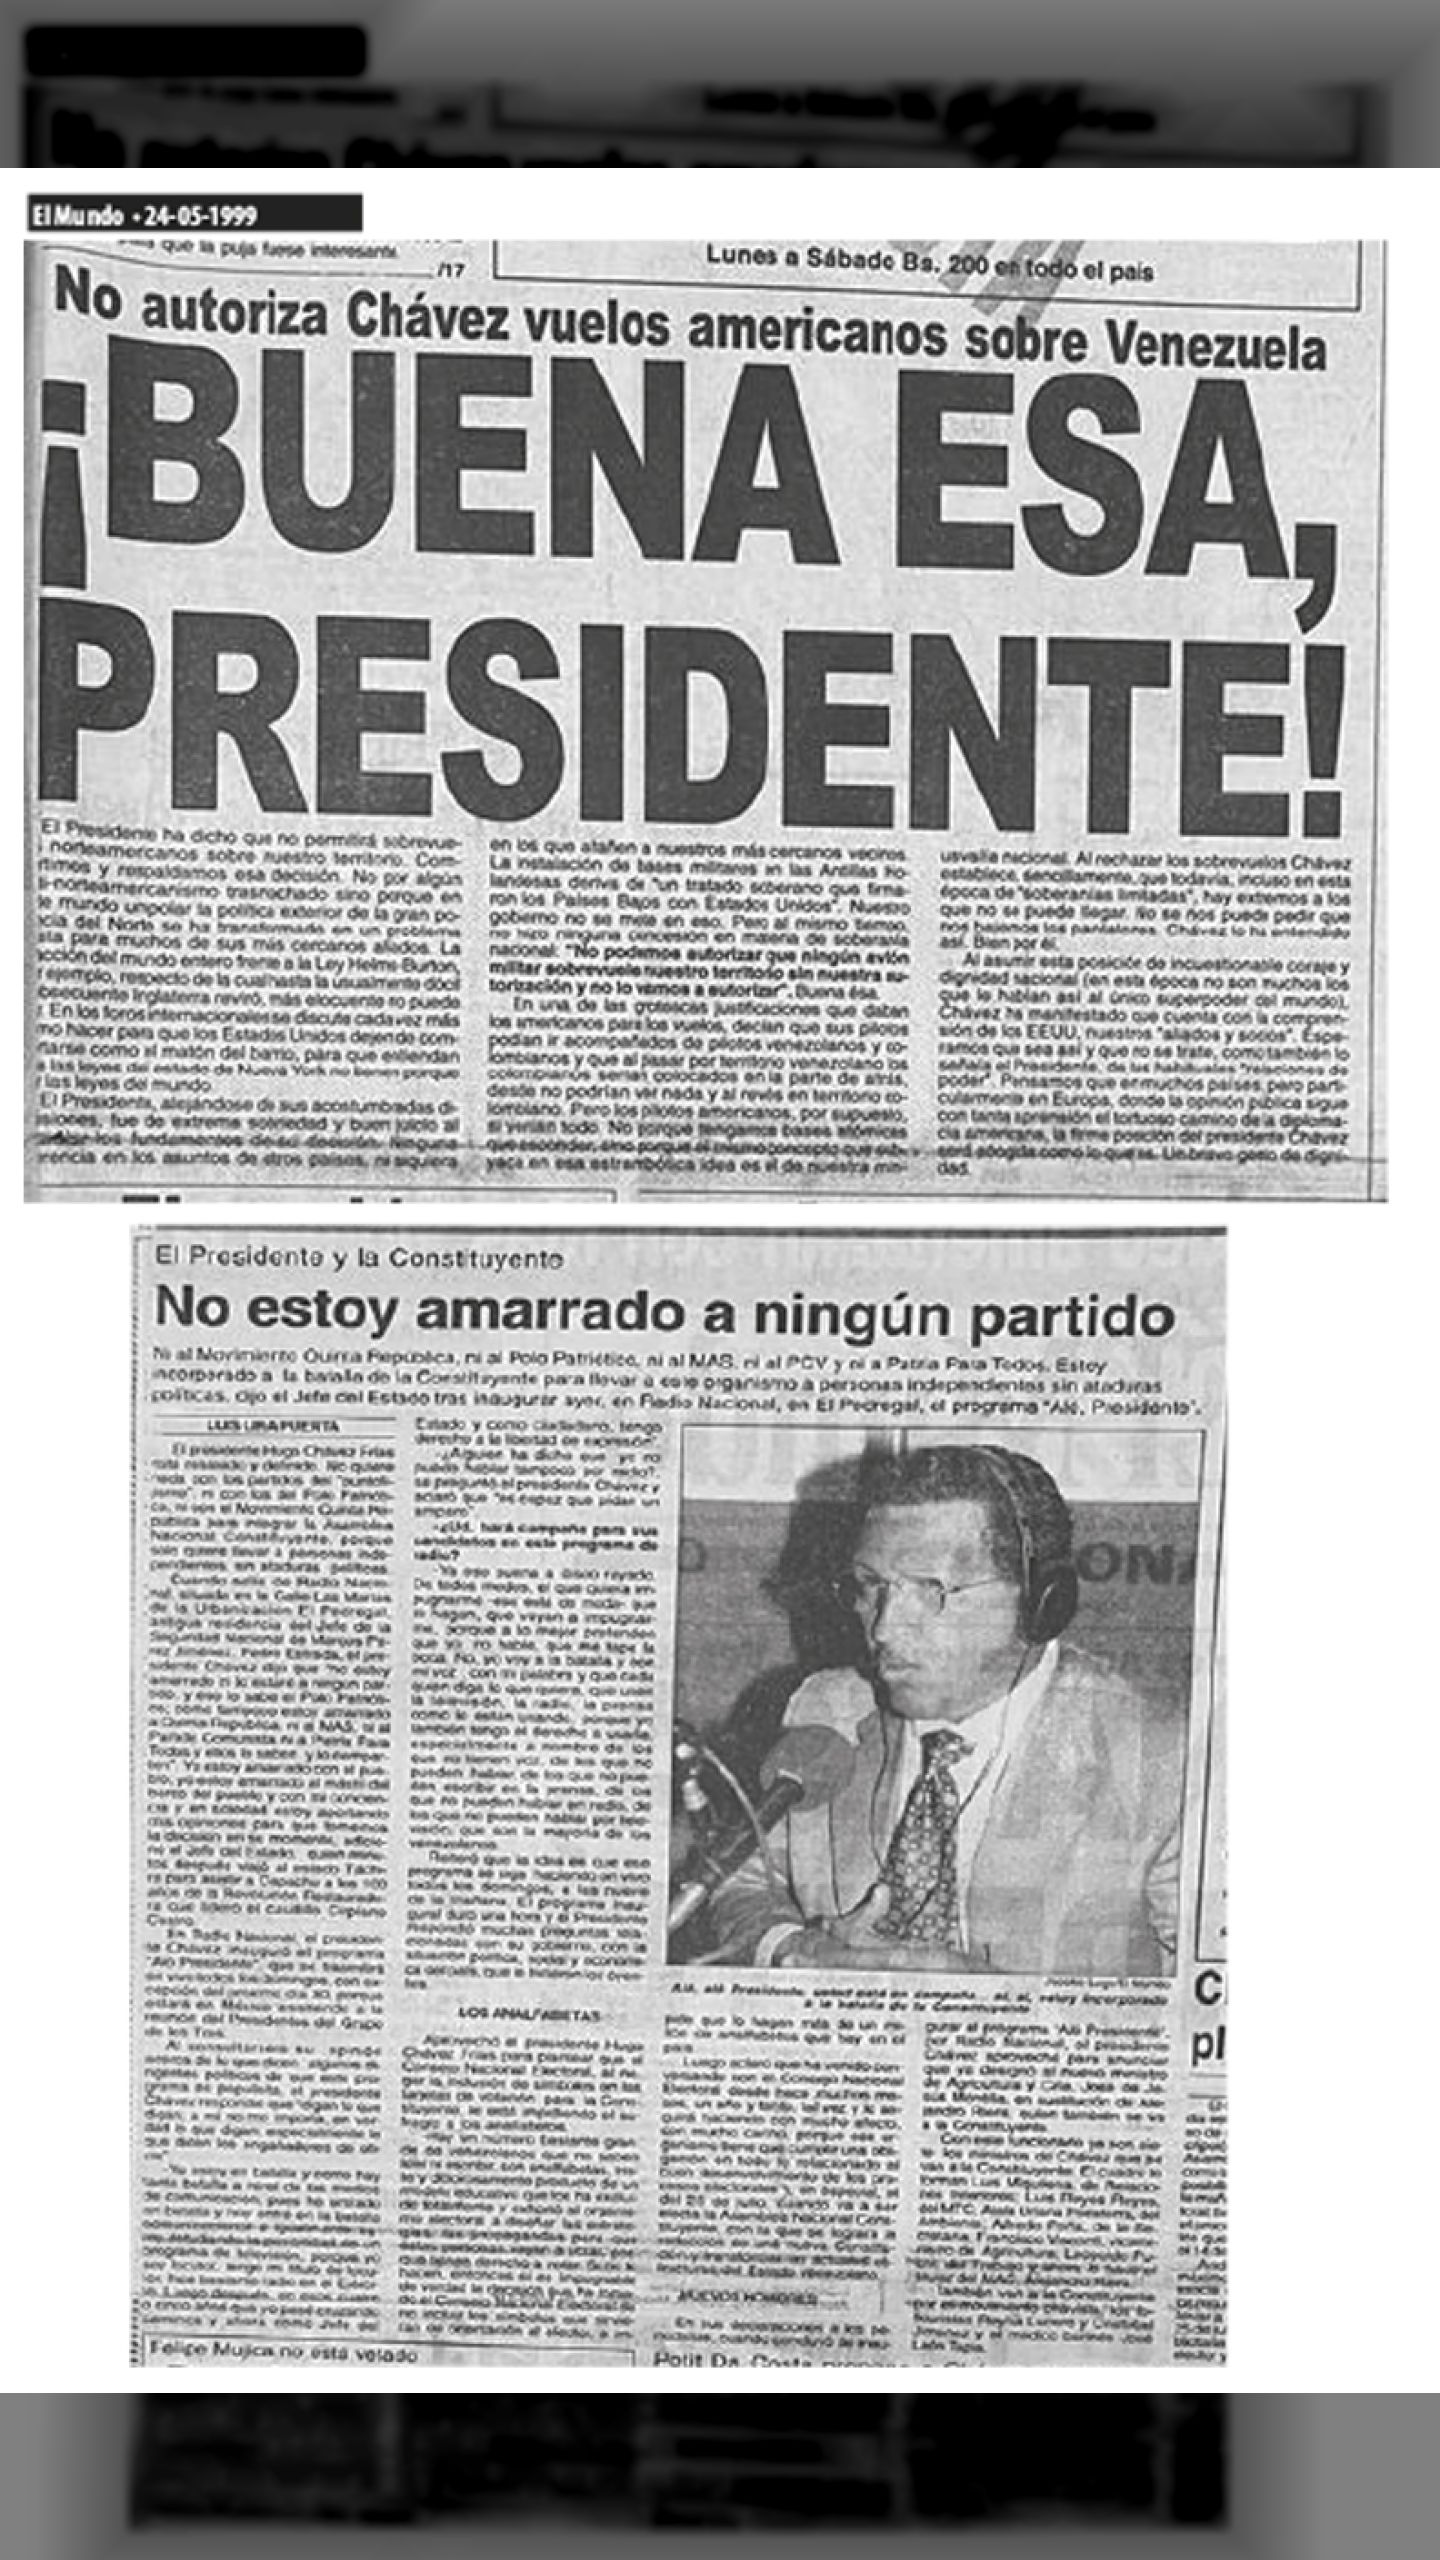 ¡BUENA ESA PRESIDENTE! (EL MUNDO, 24 DE MAYO 1999)